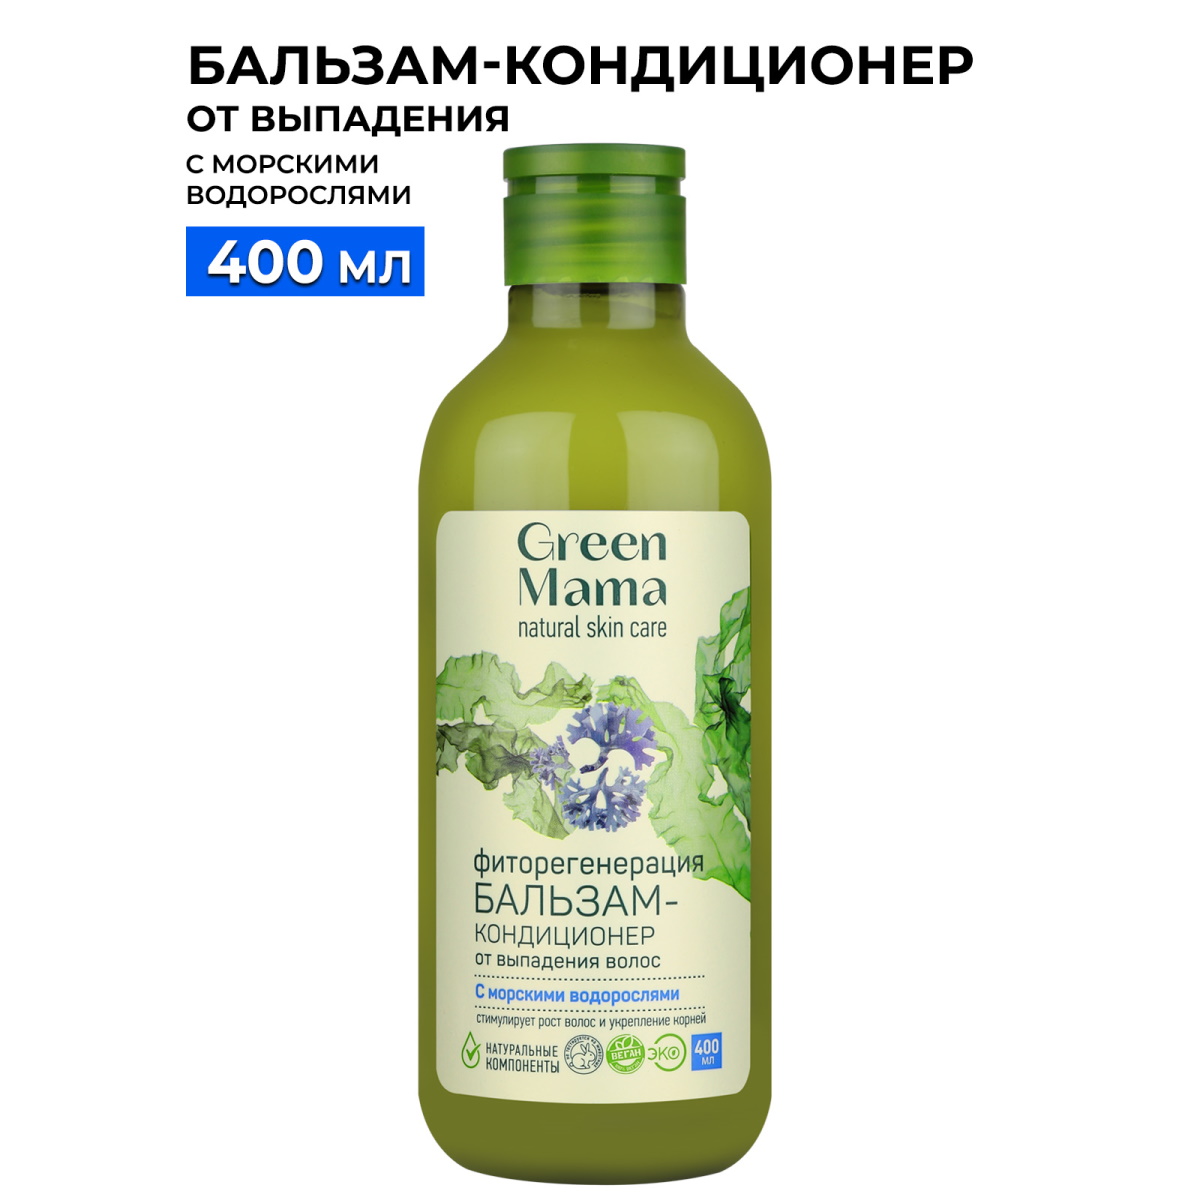 Бальзам для волос Green Mama фиторегенерация, 400 мл bio textiles халат женский green